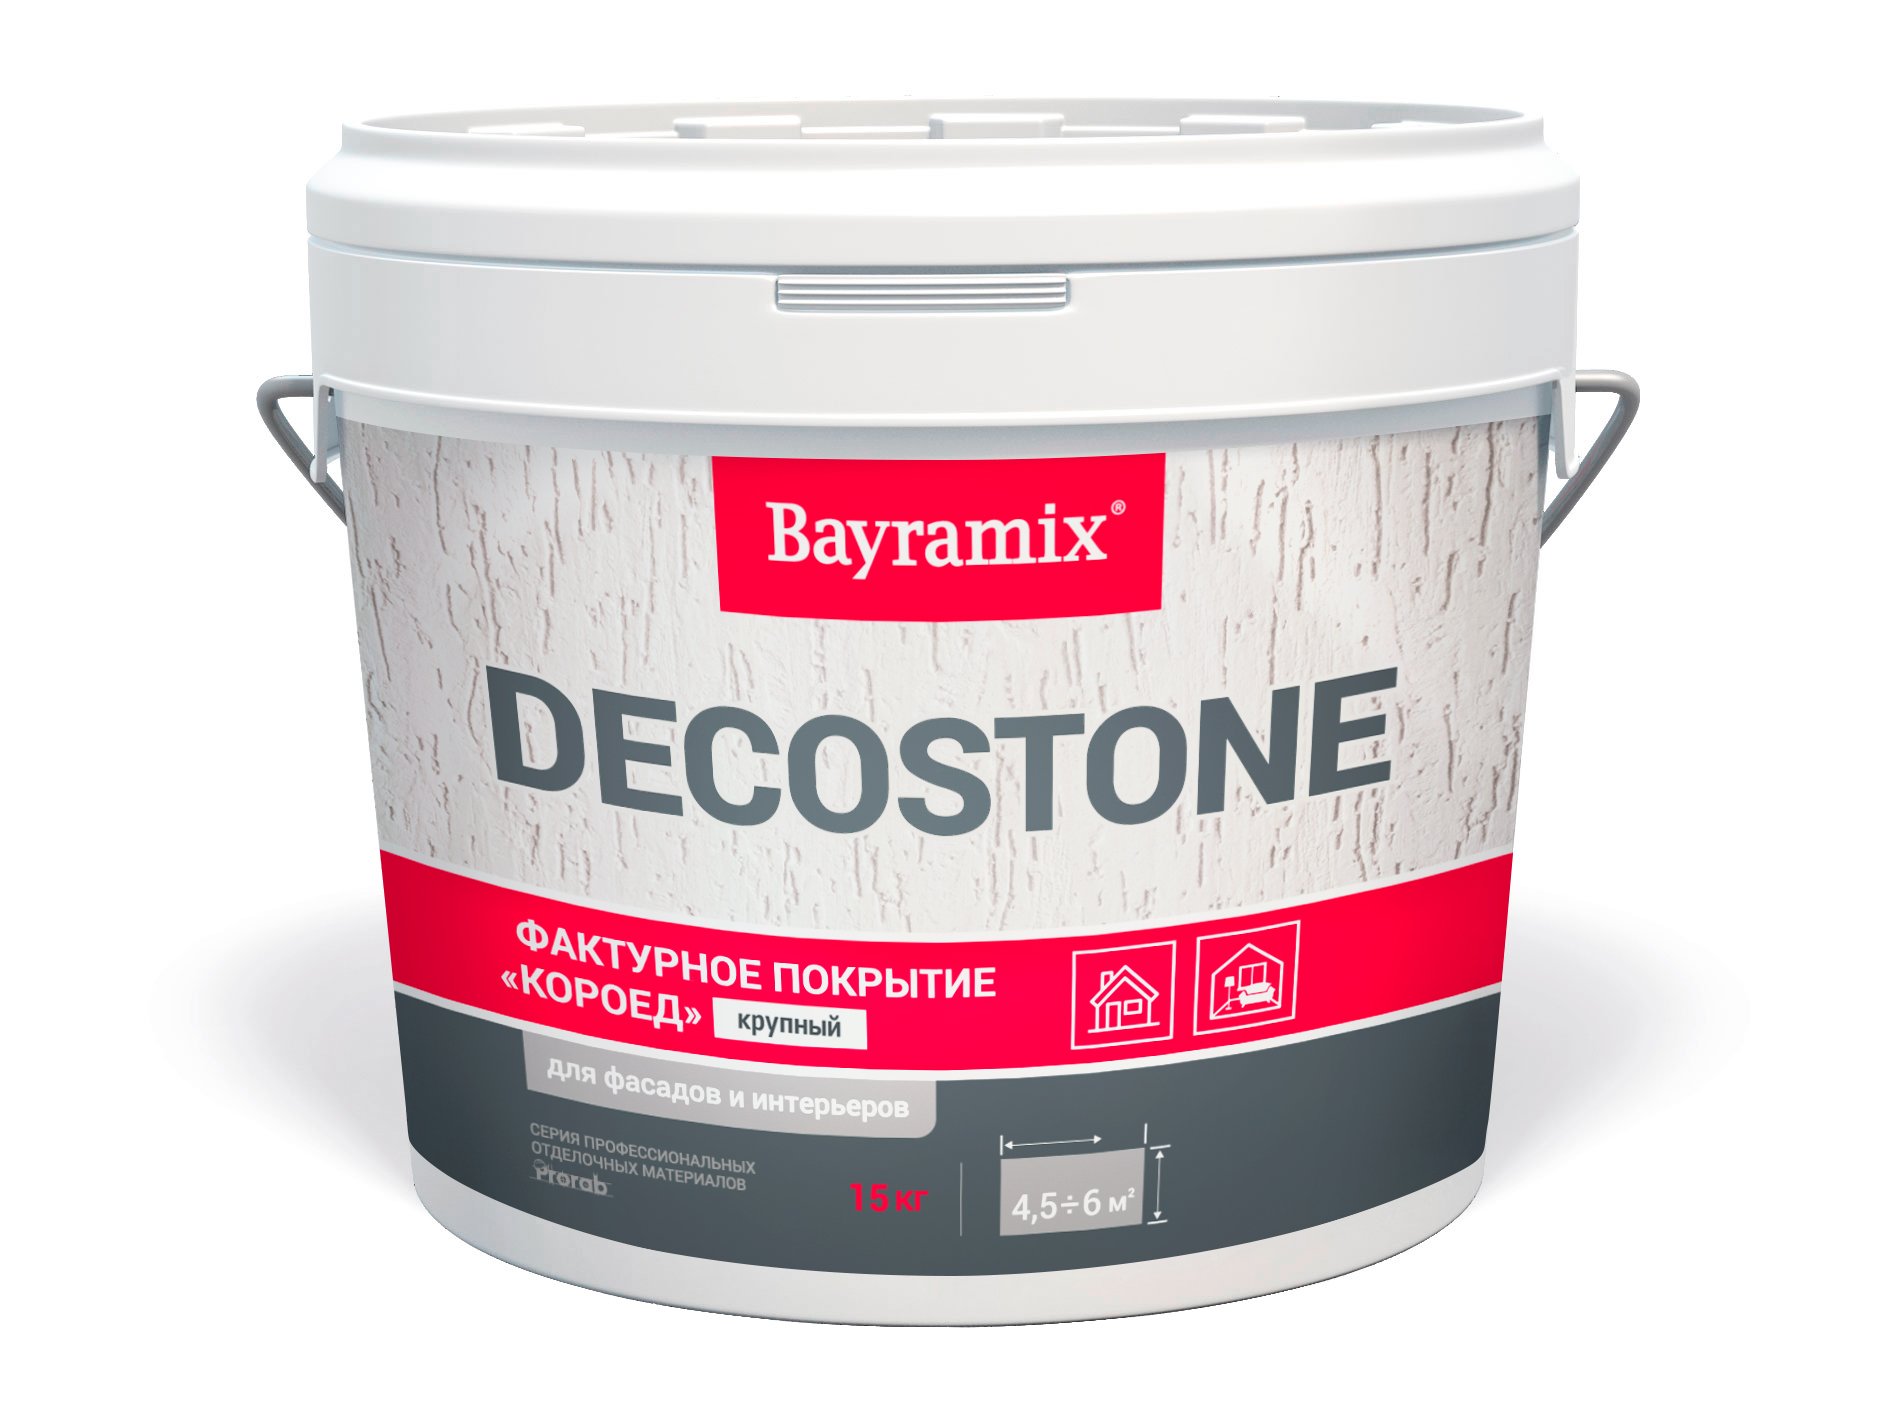 Фасадная штукатурка короед Bayramix Decostone (крупная), 15 кг штукатурка цементная боларс фасадная 25 кг